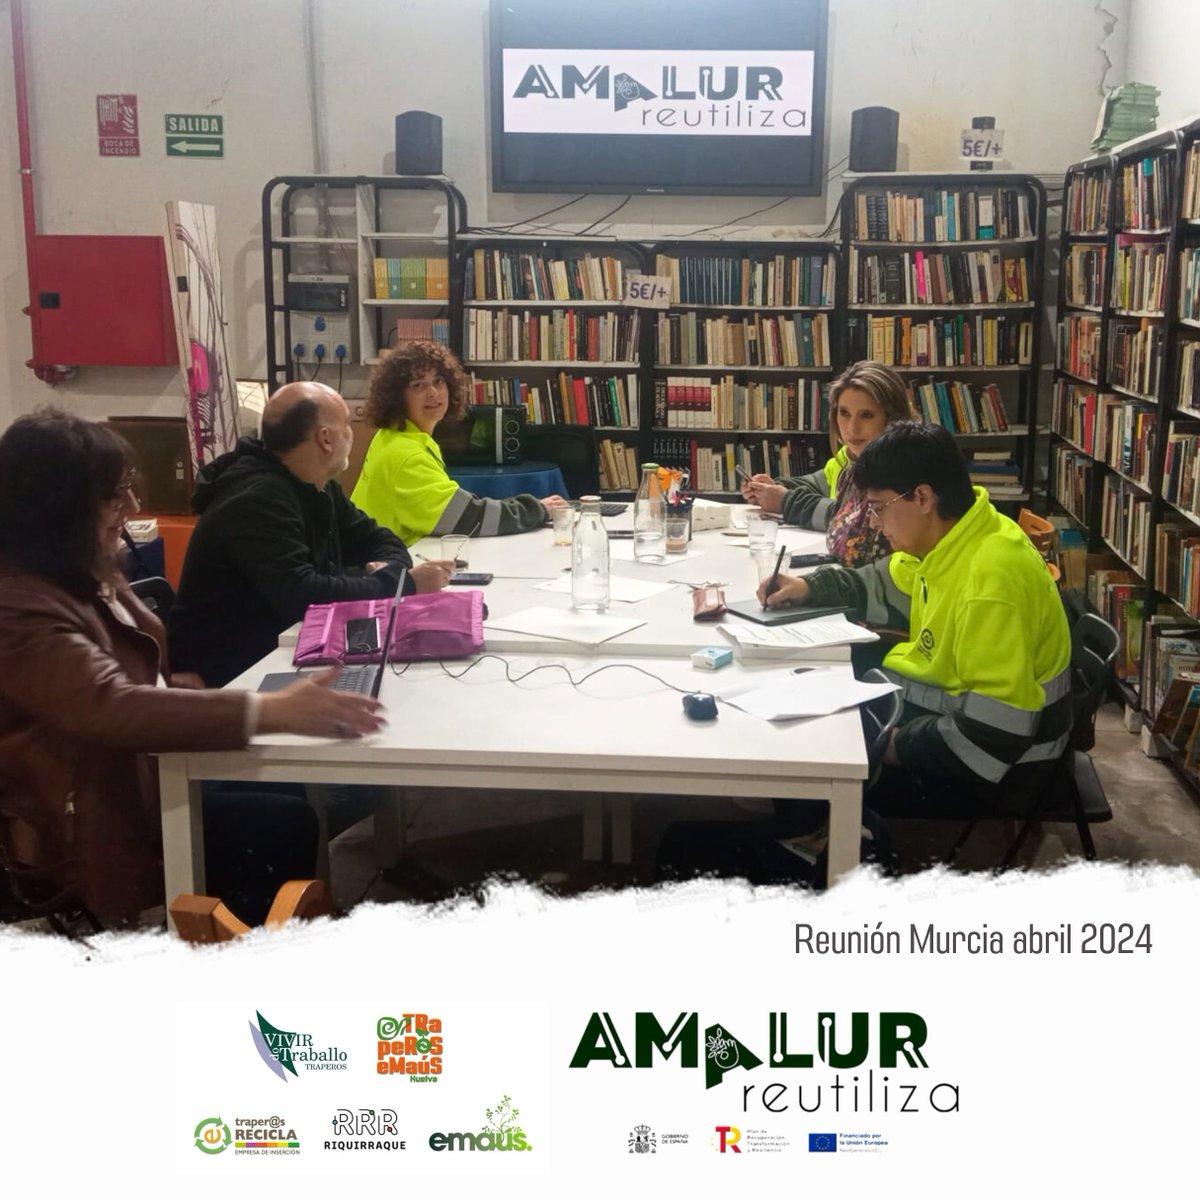 Hoy lunes, hemos celebrado #EnMurcia la primera asamblea presencial de @amalurreutiliza, un innovador proyecto que desarrollamos @traperoshuelva @riquirraque @EmausBilbao y @emausasturias y que promueve la #gestiónderesiduos sostenible y que fomenta la #economíacircular